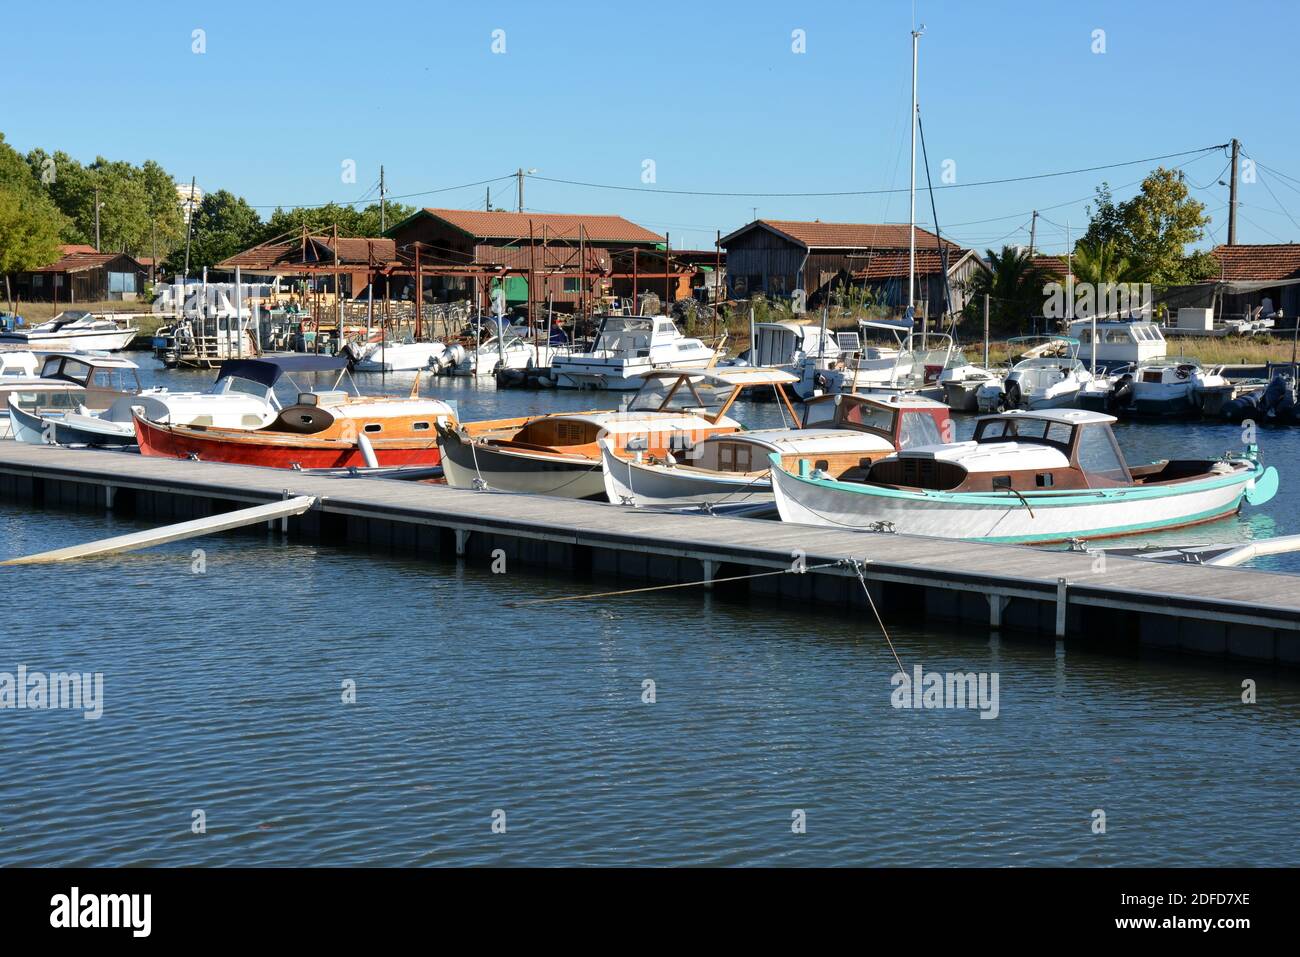 Francia, Aquitania, el puerto de la Teste de Buch con sus alces, los barcos tradicionales de la bahía de Arcachon y las chozas de ostras de los granjeros de ostras. Foto de stock